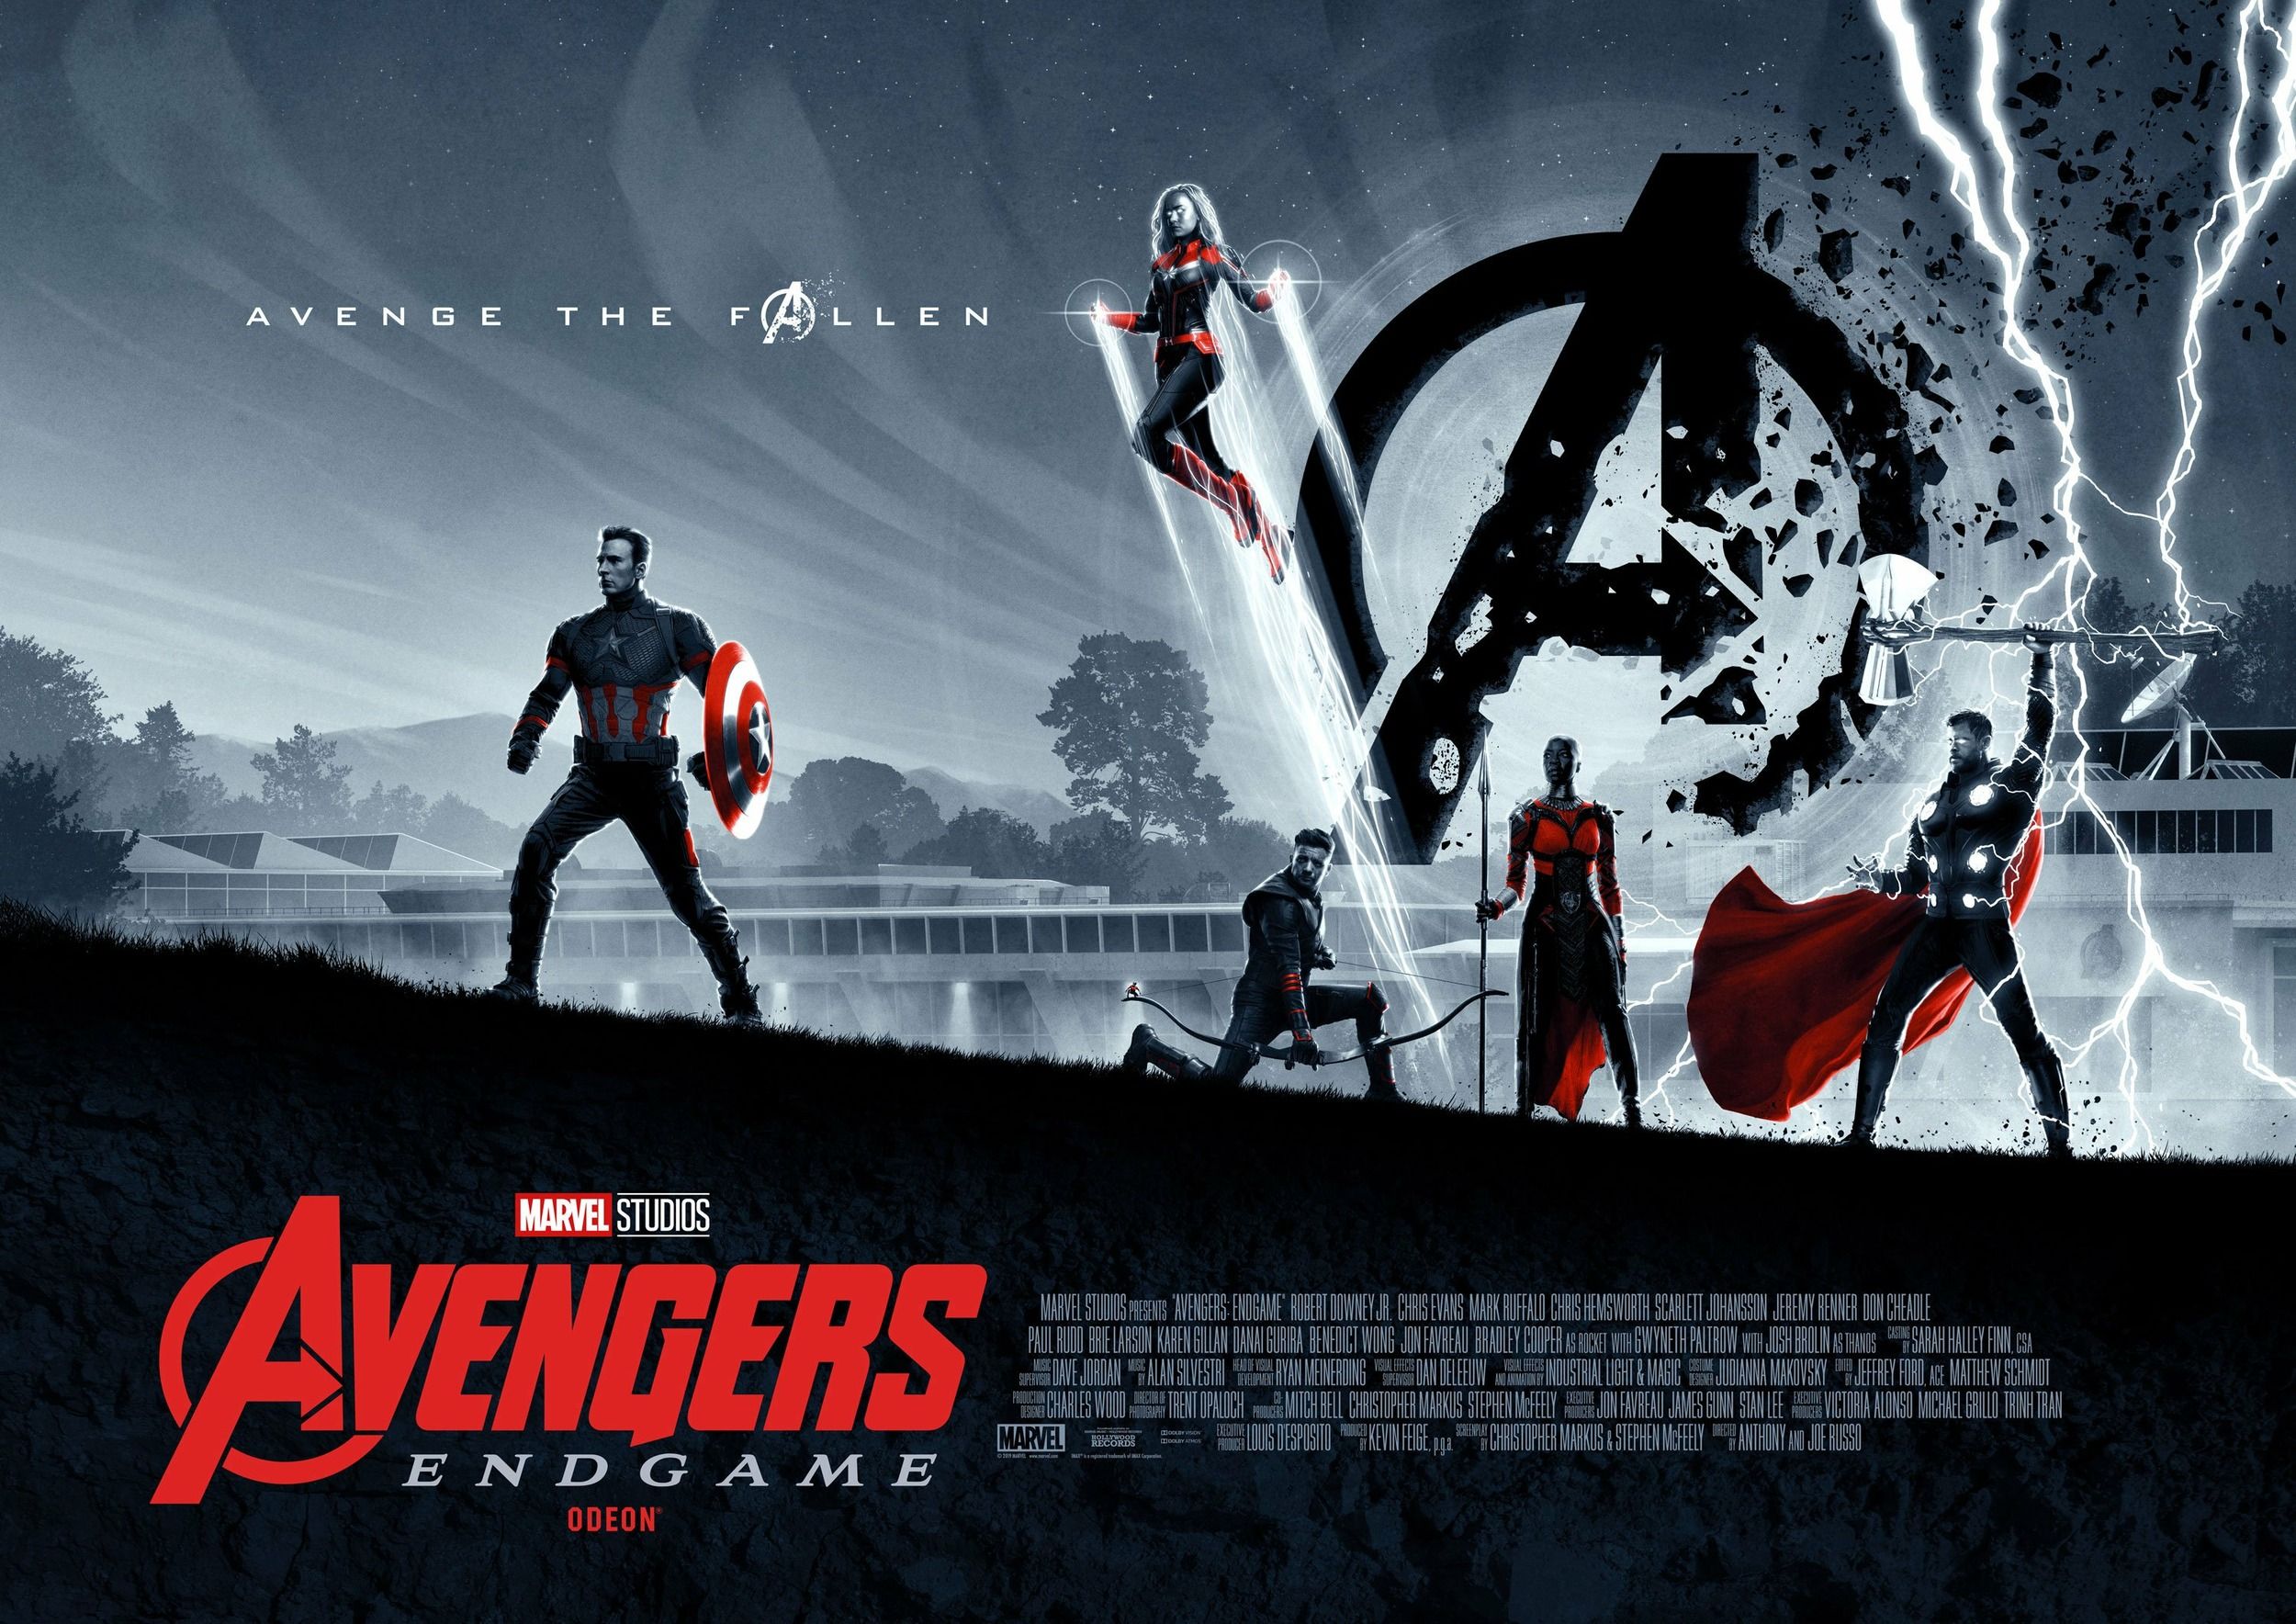 Avengers Endgame Odeon poster #1